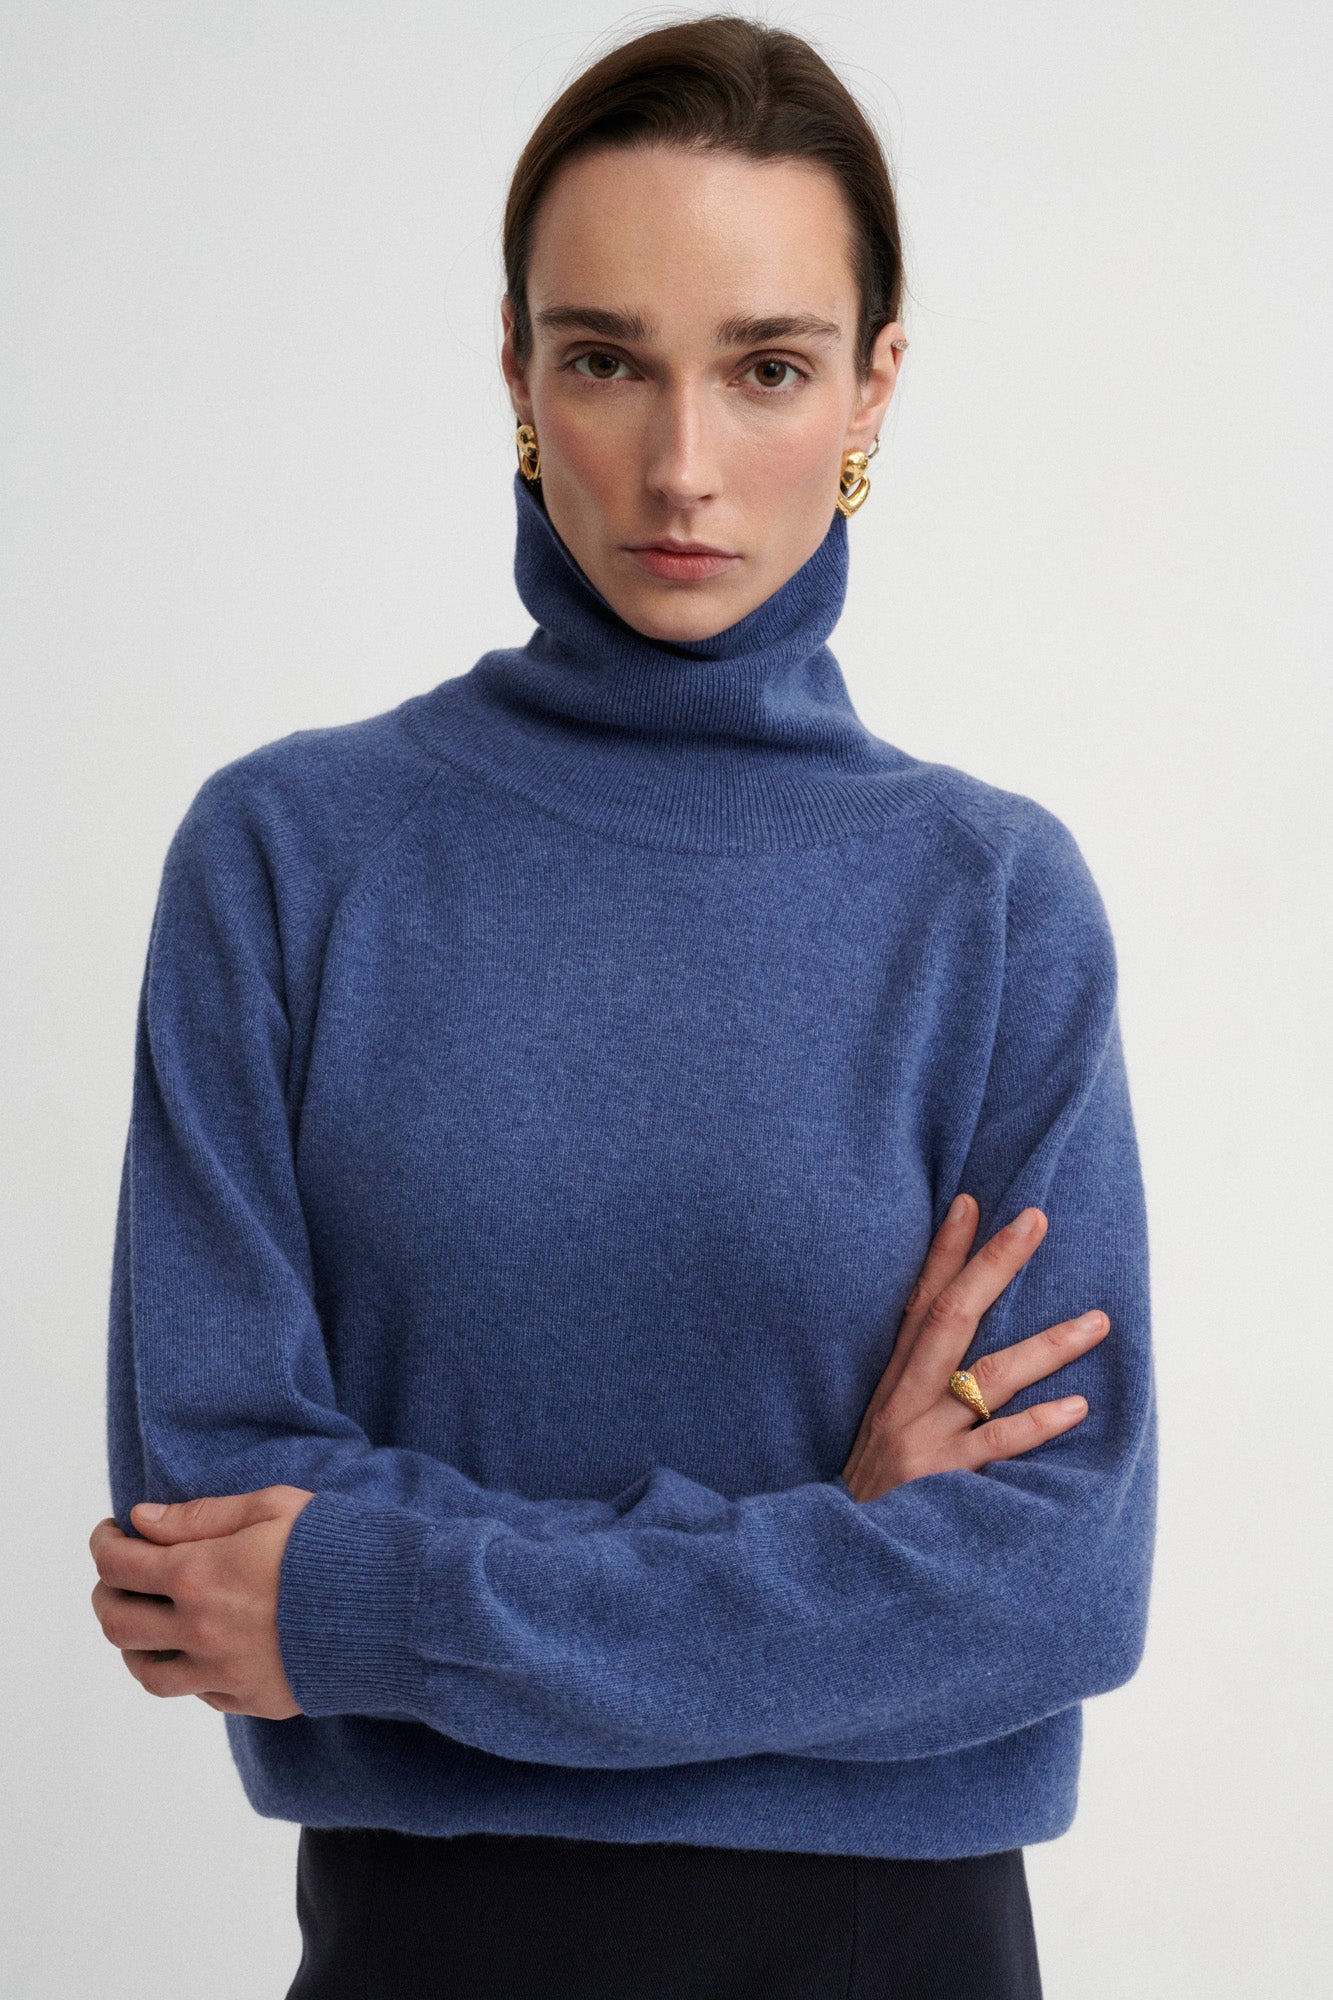 Sweater in merino wool / 16 / 13 / storm blue